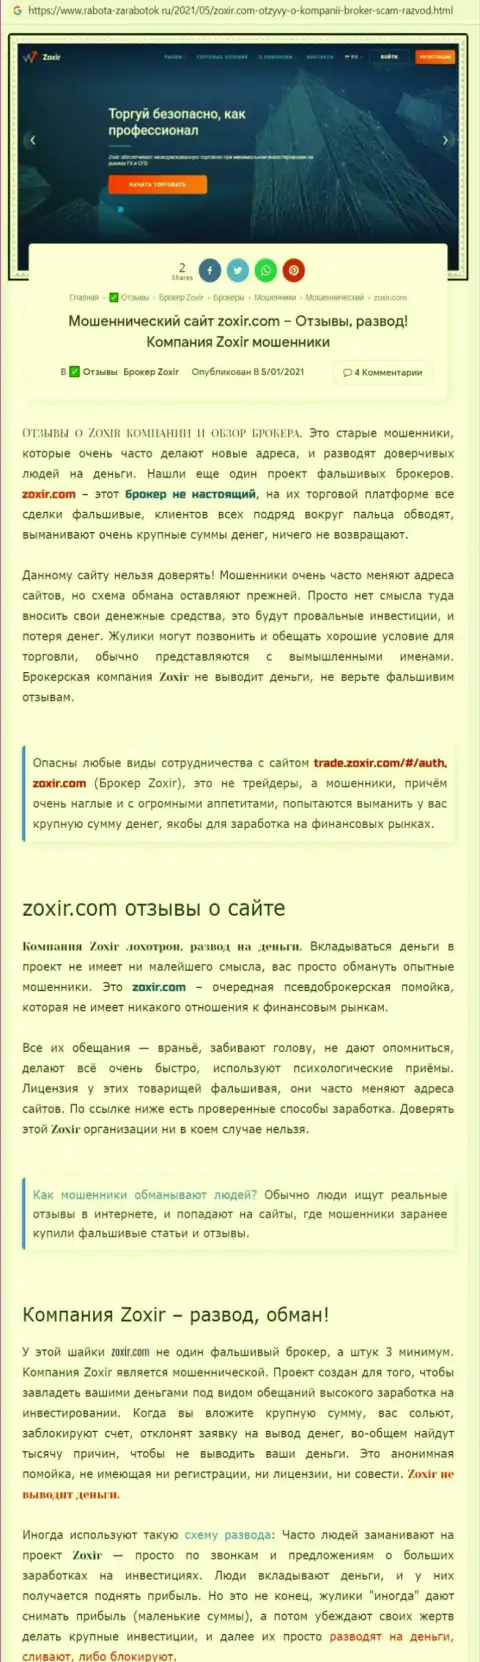 Автор обзора рекомендует не вкладывать средства в разводняк Зохир Ком - СОЛЬЮТ !!!